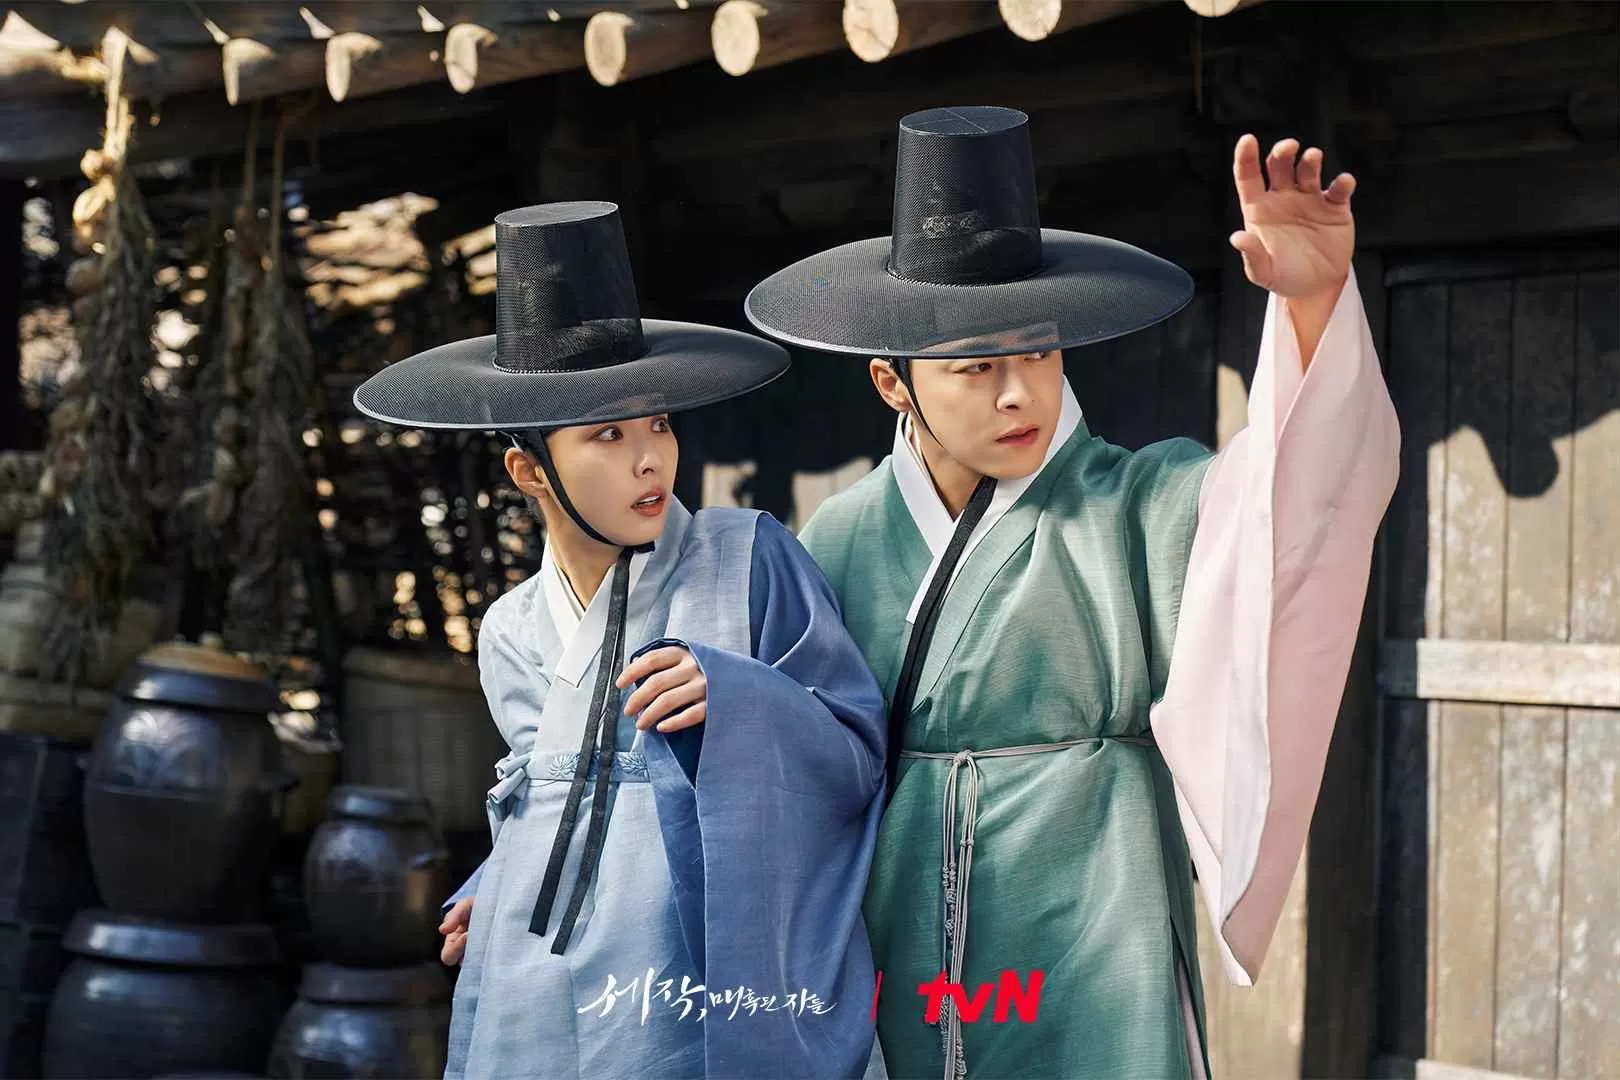 TAYANG Malam Ini! Klik Link Nonton Captivating The King Sub Indo Episode 1 di Sini, Drakor Baru yang Dibintangi Cho Jung Seok dan Shin Se Kyung